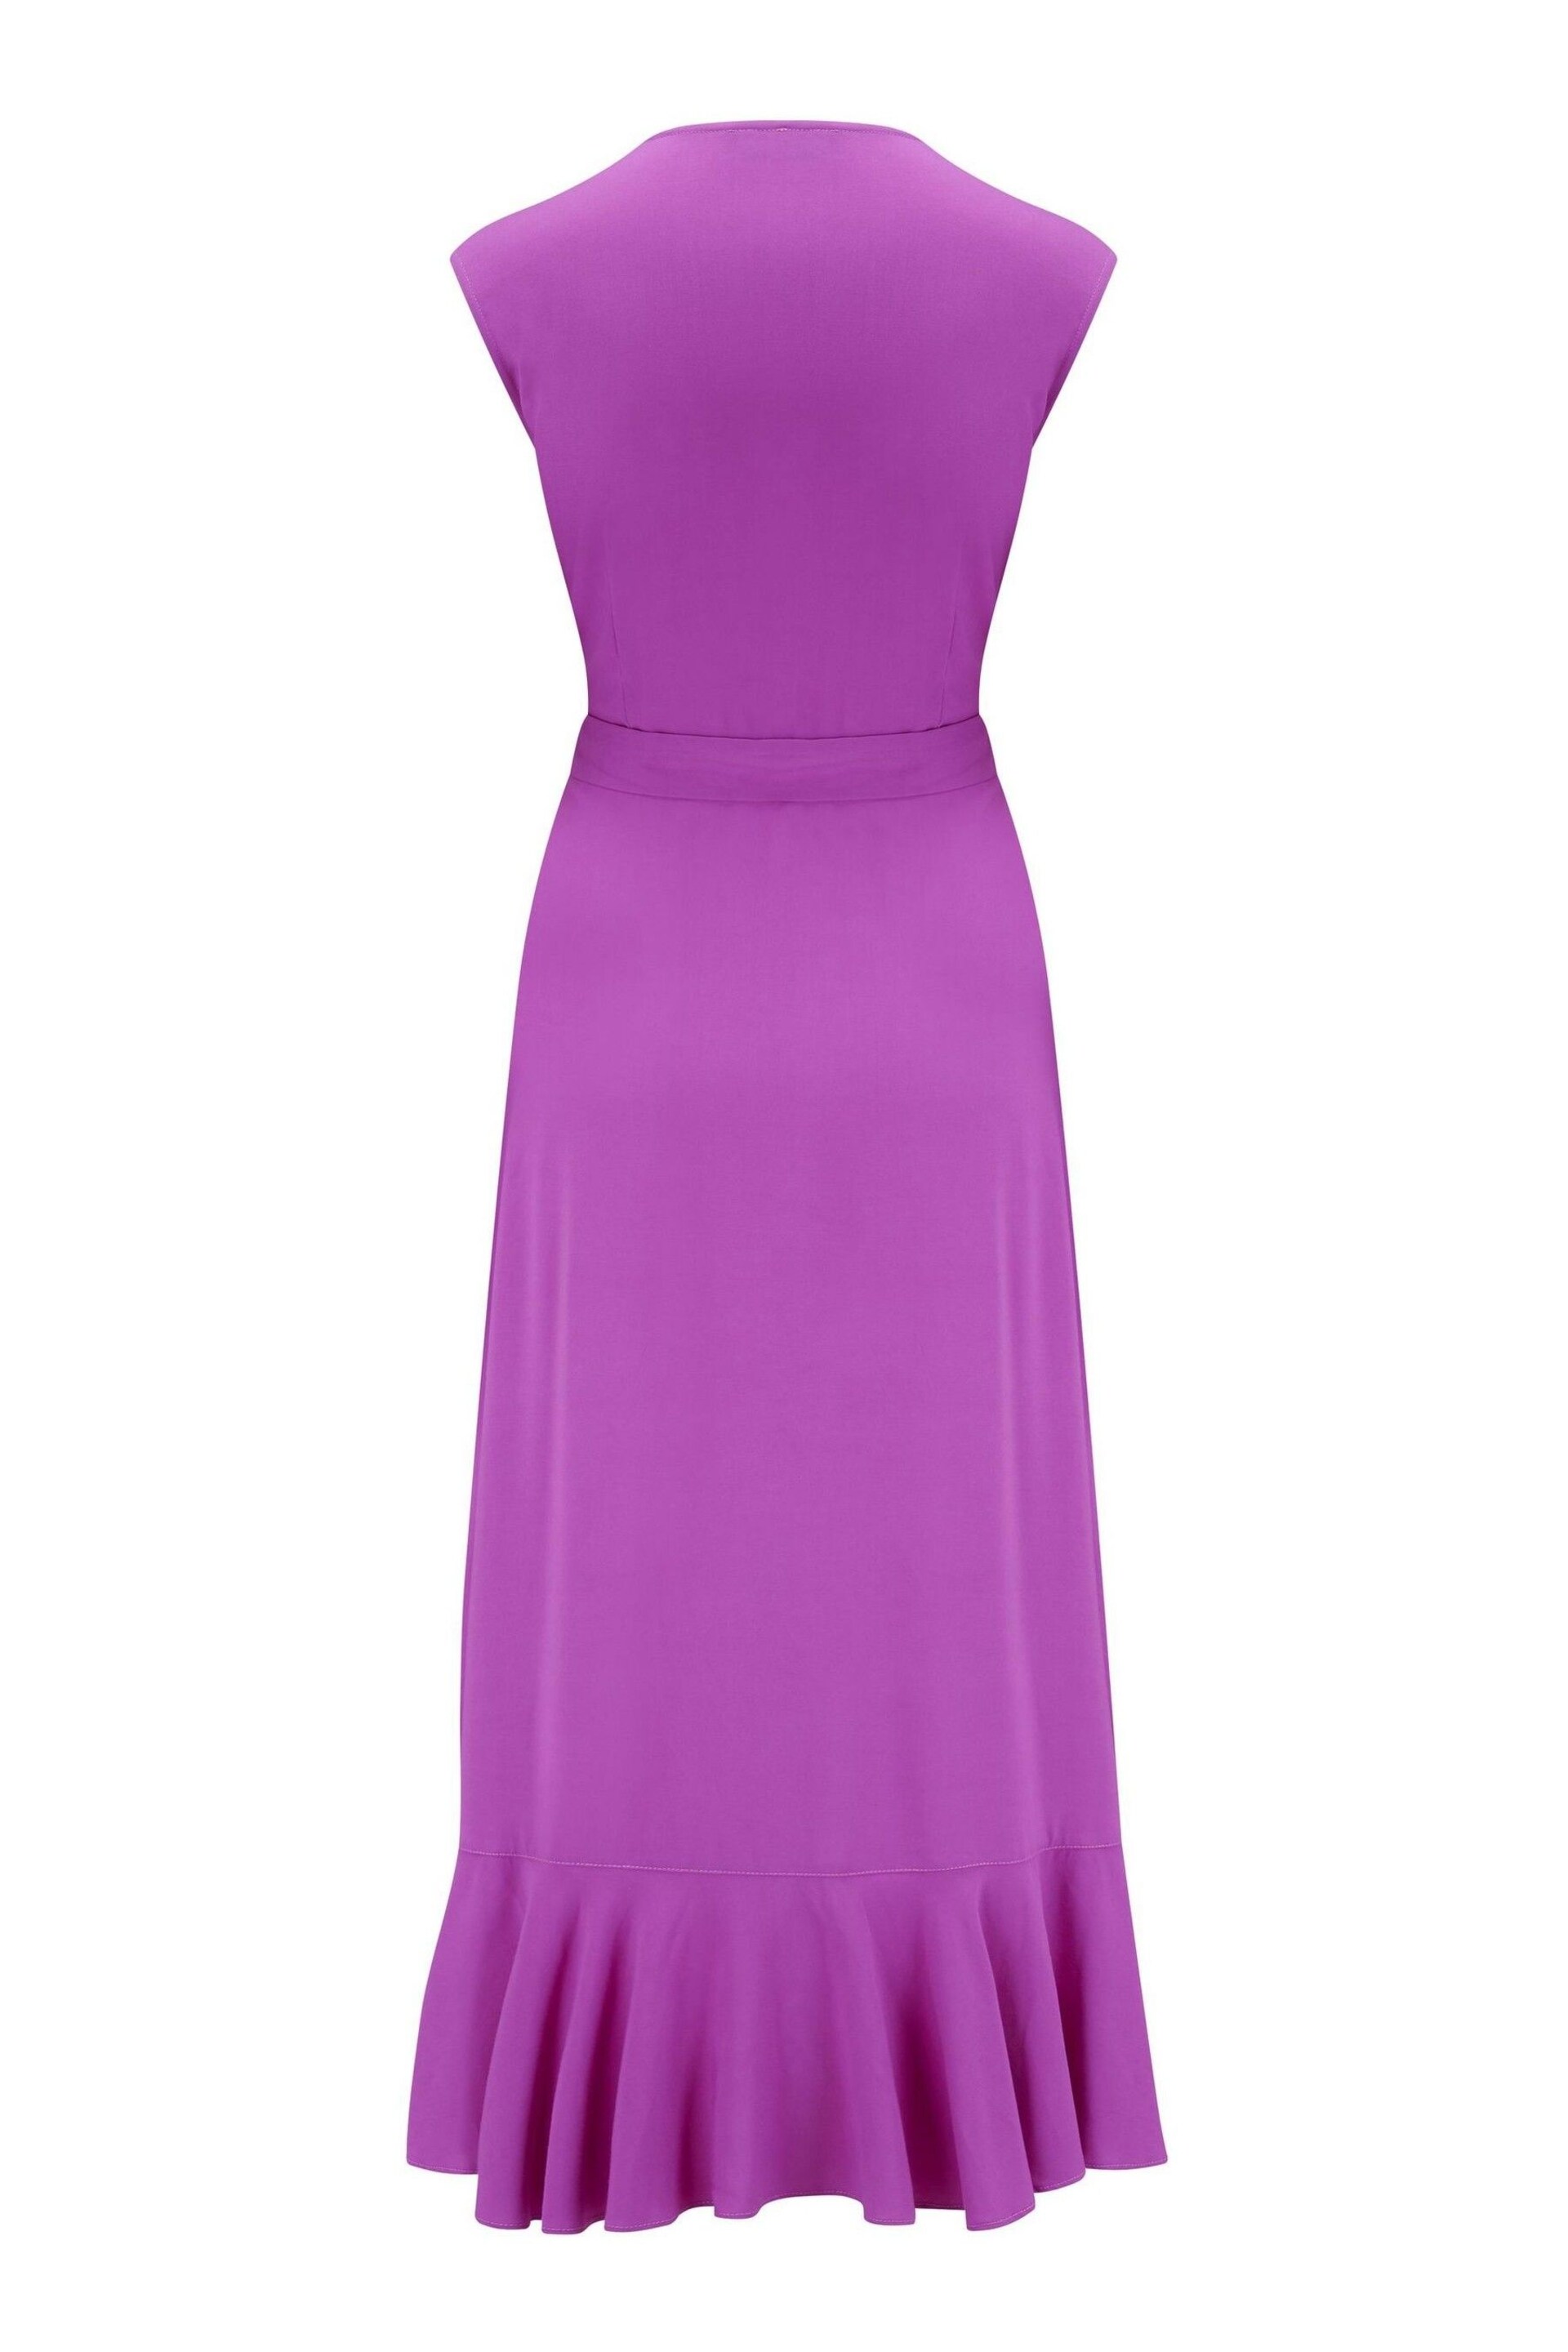 Pour Moi Purple Midaxi Wrap Dress - Image 6 of 6